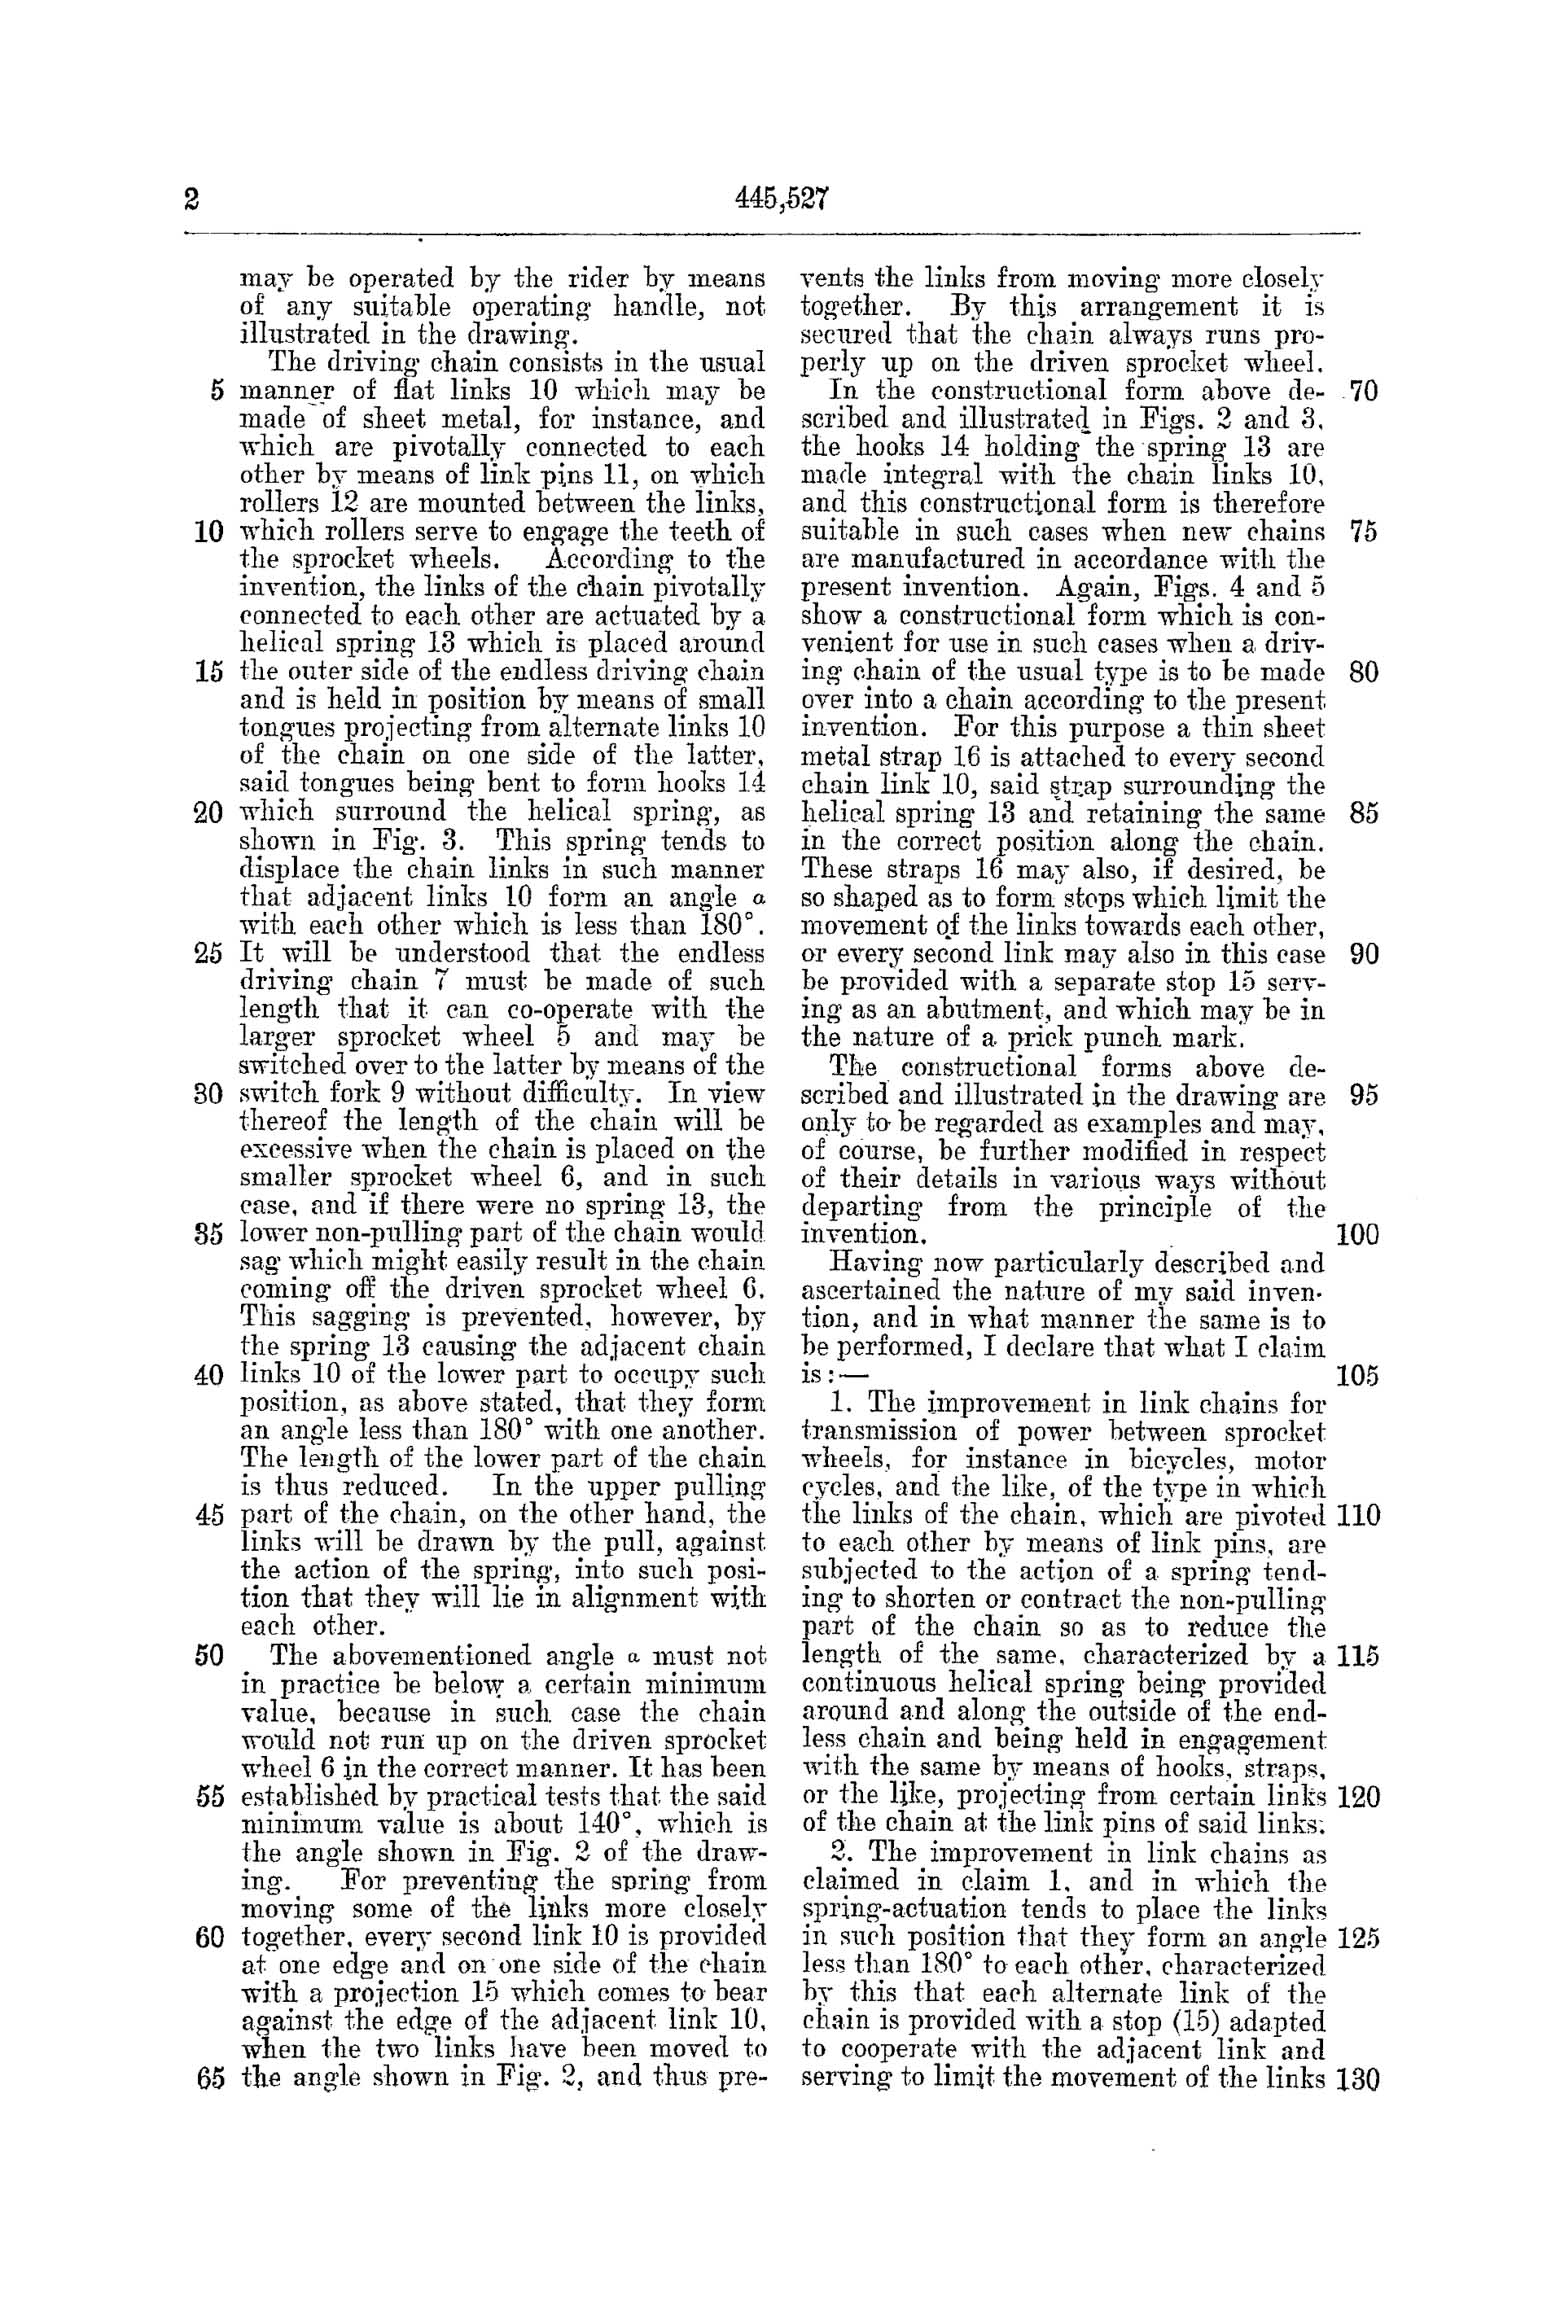 UK Patent # 445,527 - Brevix scan 02 main image